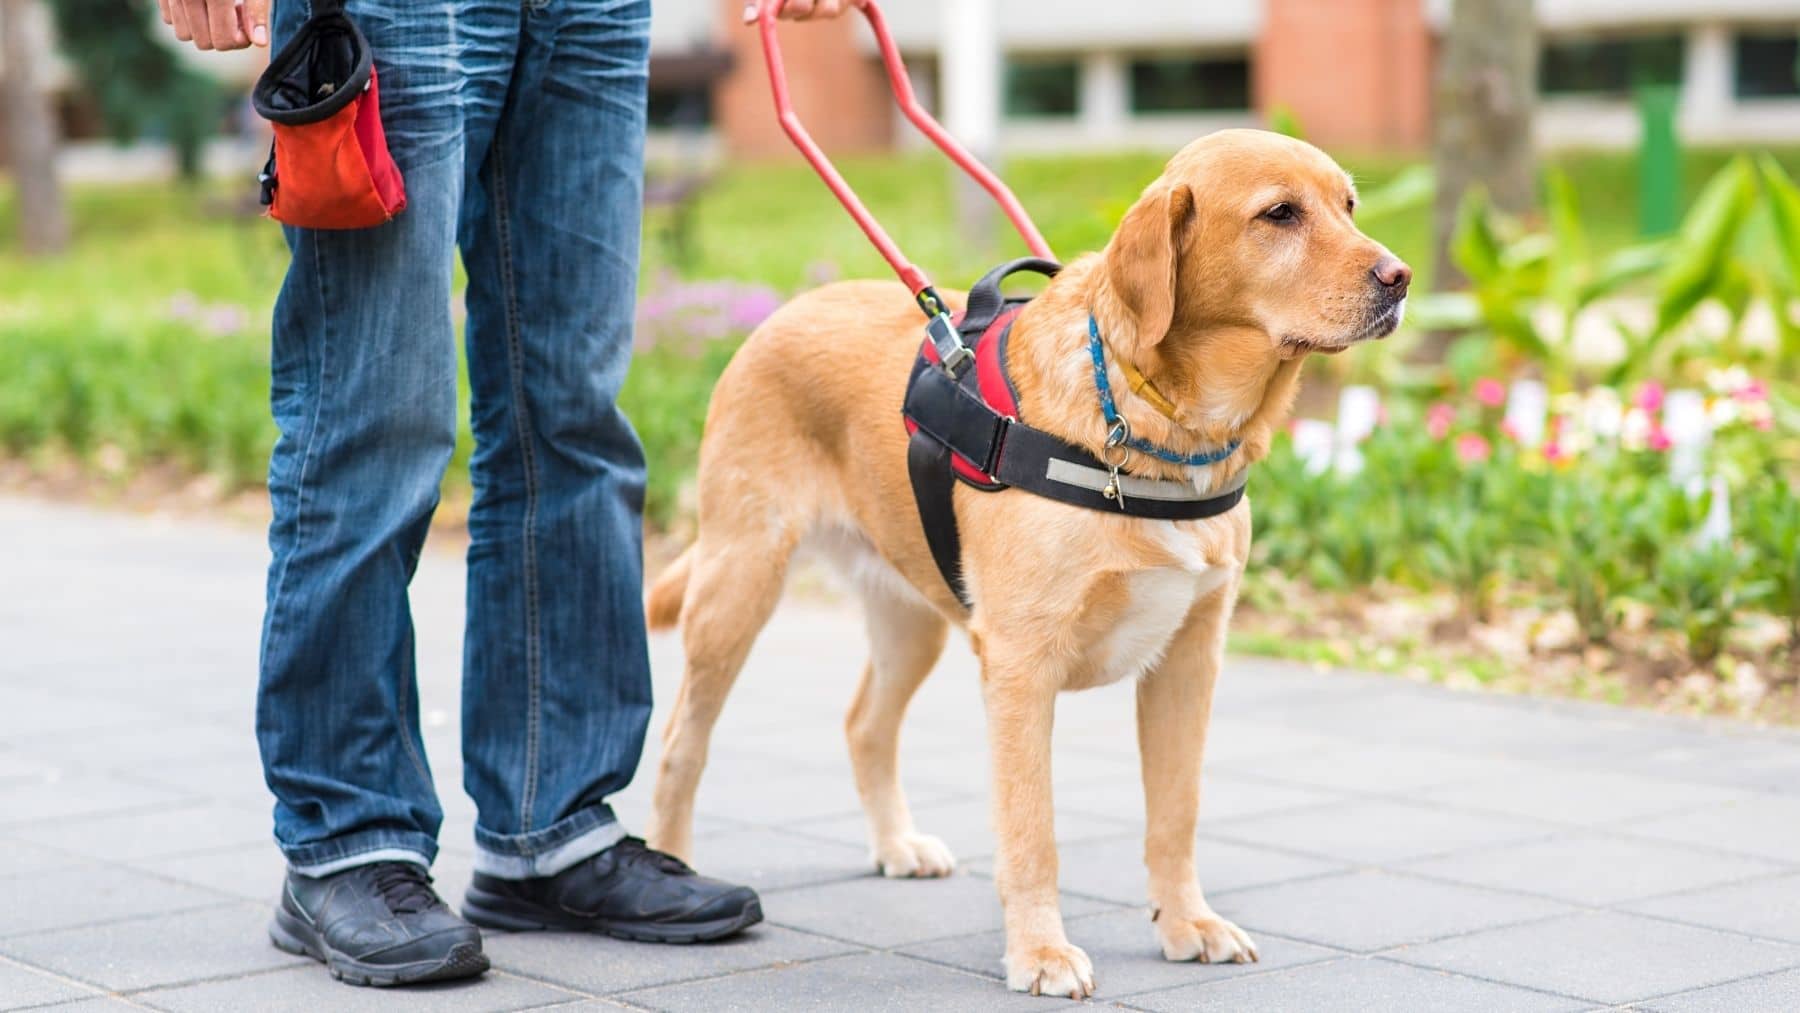 La ONCE inicia un proyecto innovador en el mundo y entrega un perro guía a una persona ciega sin brazos